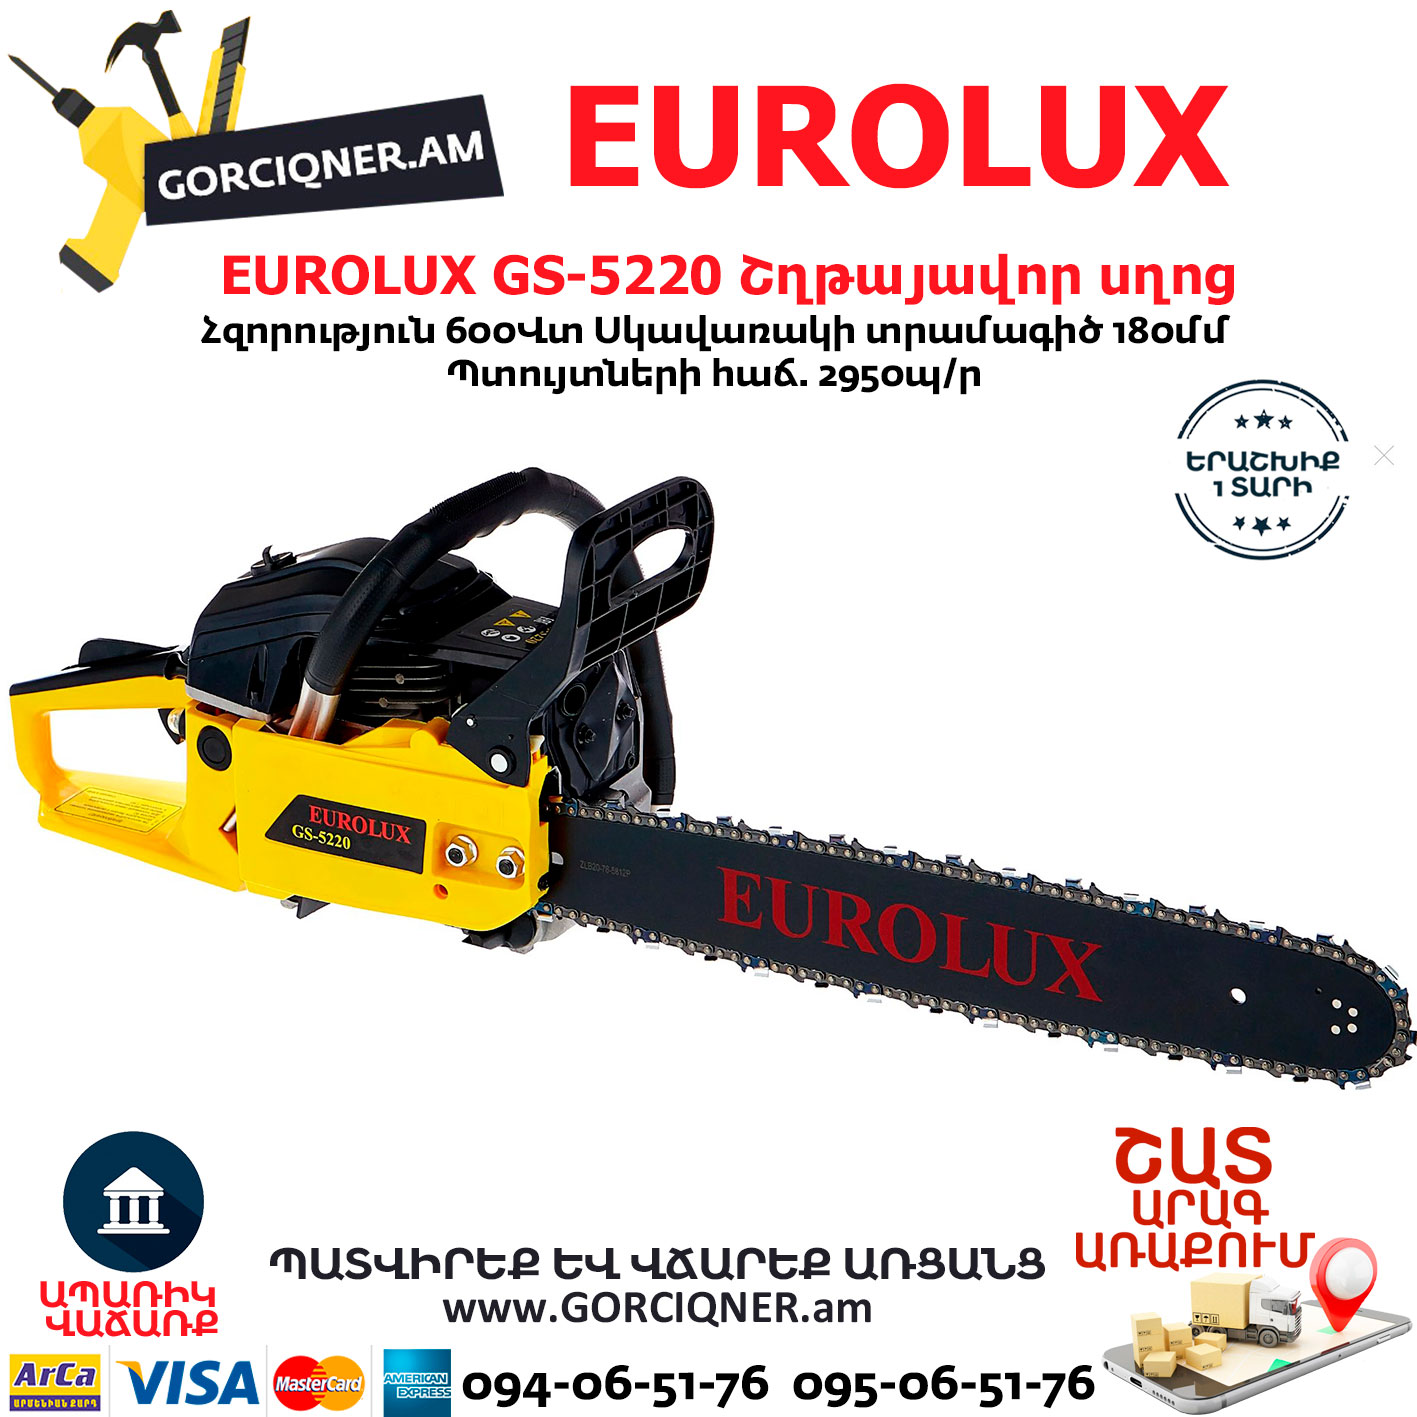 Eurolux gs 5220. Старкер Eurolux 5220. Пила Eurolux GS-5220 топливный фильтр. Пила Eurolux GS-5220 настройка оборотов. Шина для бензопилы 50см черная.